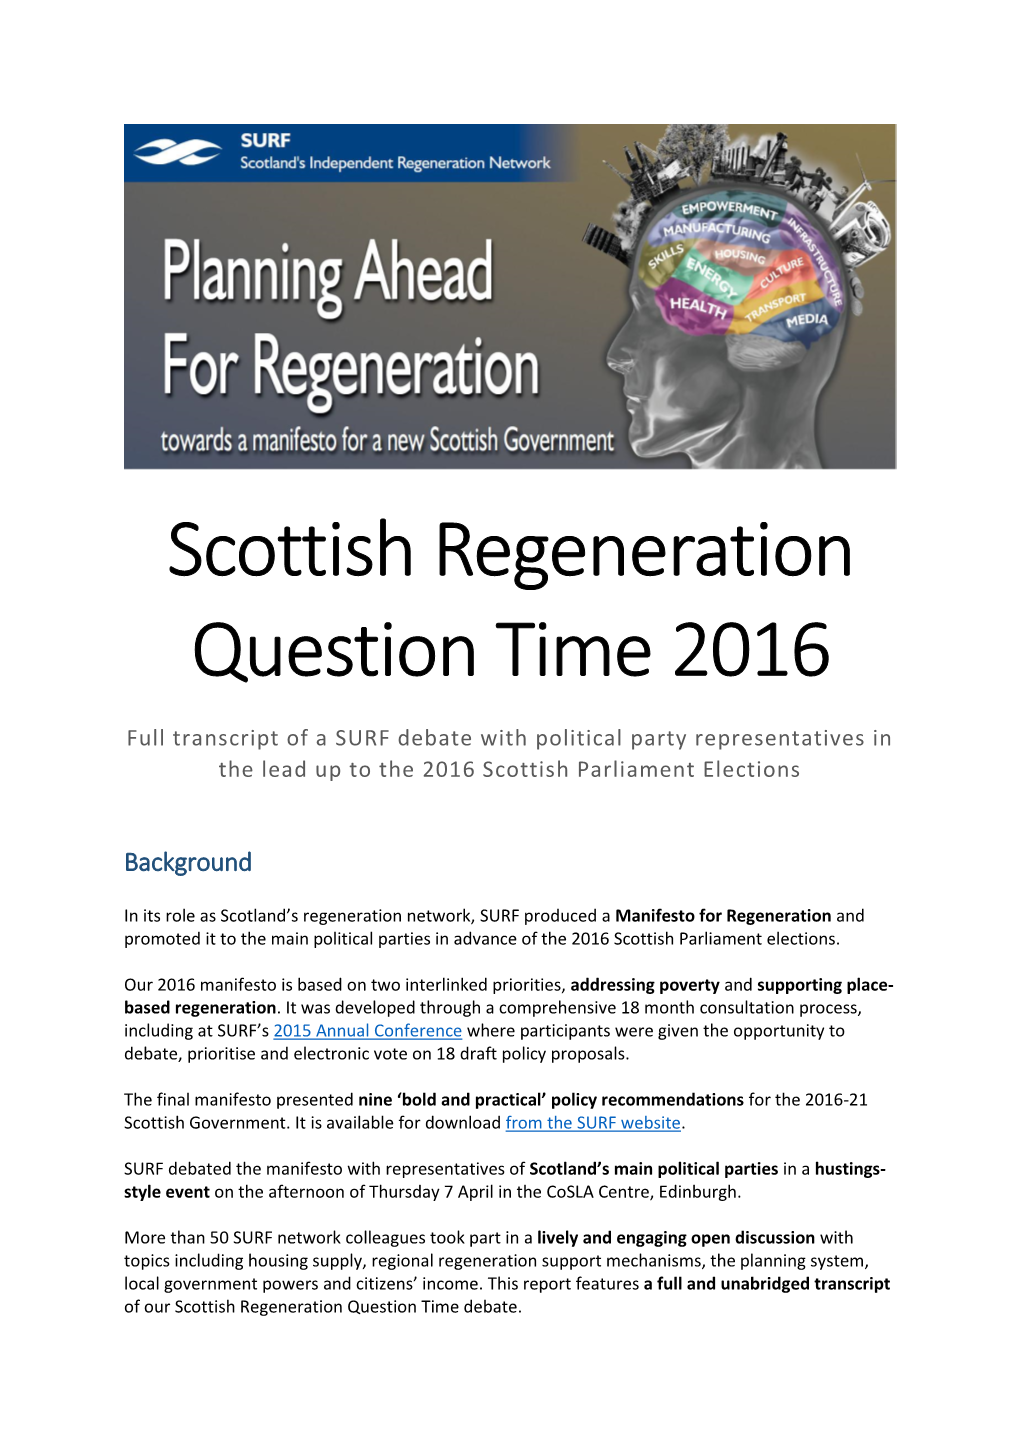 Scottish Regeneration Question Time Transcript